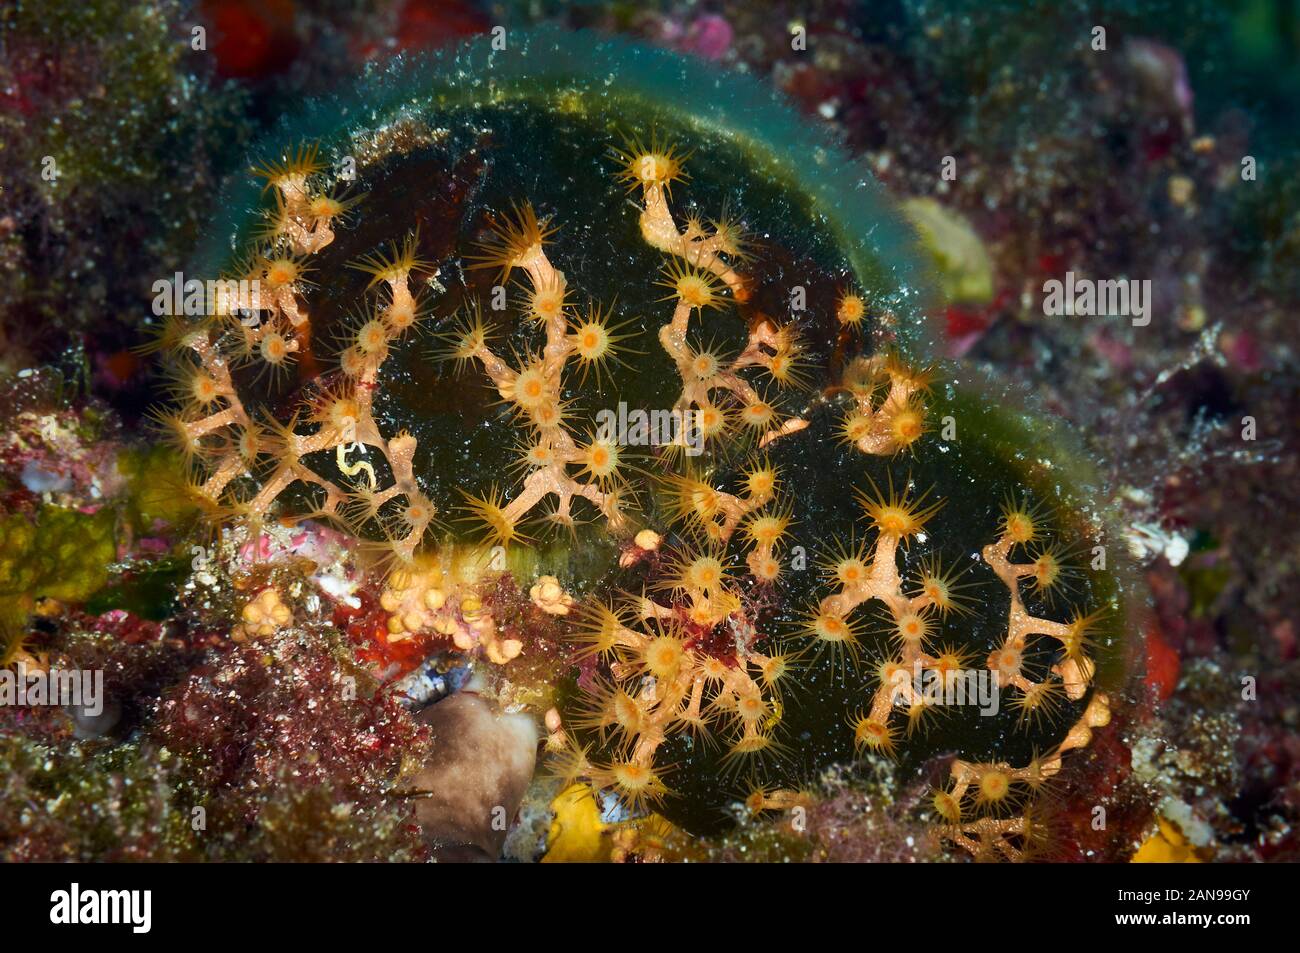 Cluster jaune Parazoanthus axinellae (anémone) sur Codium bursa algue en Parc Naturel de Ses Salines, Formentera (Baléares, mer Méditerranée) Banque D'Images